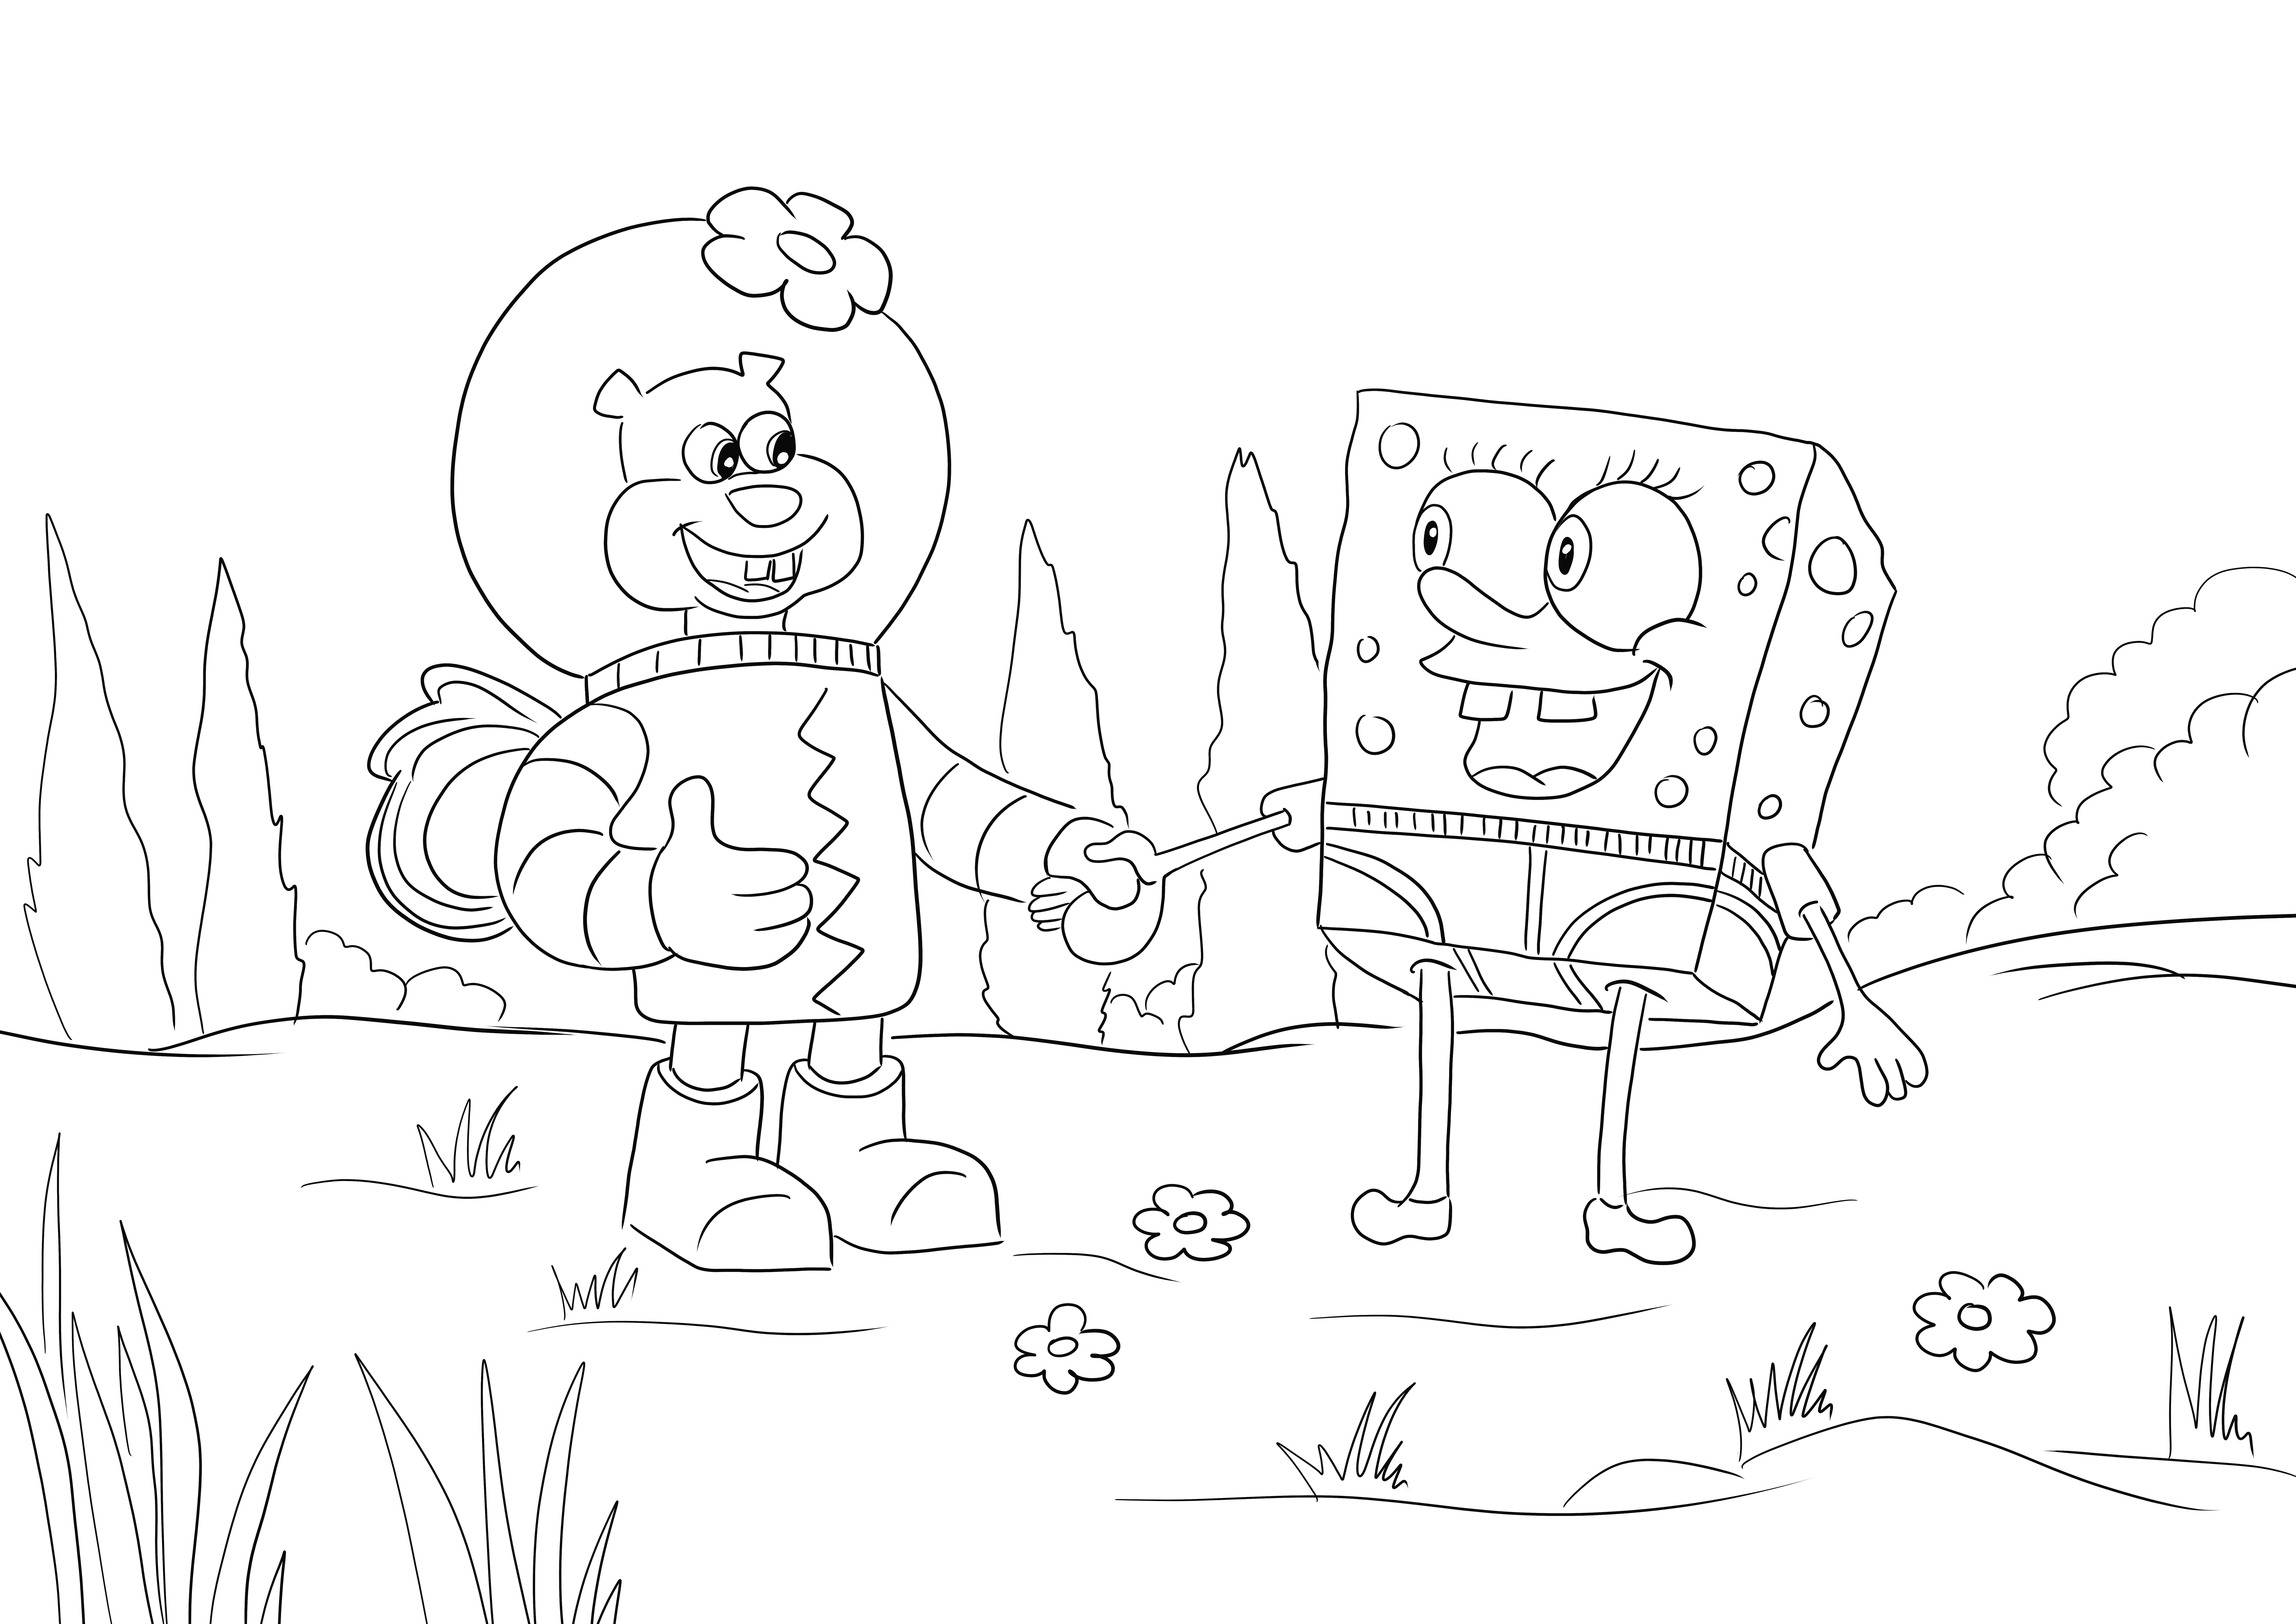 SpongeBob e Sandy Cheeks liberi di stampare e colorare l'immagine